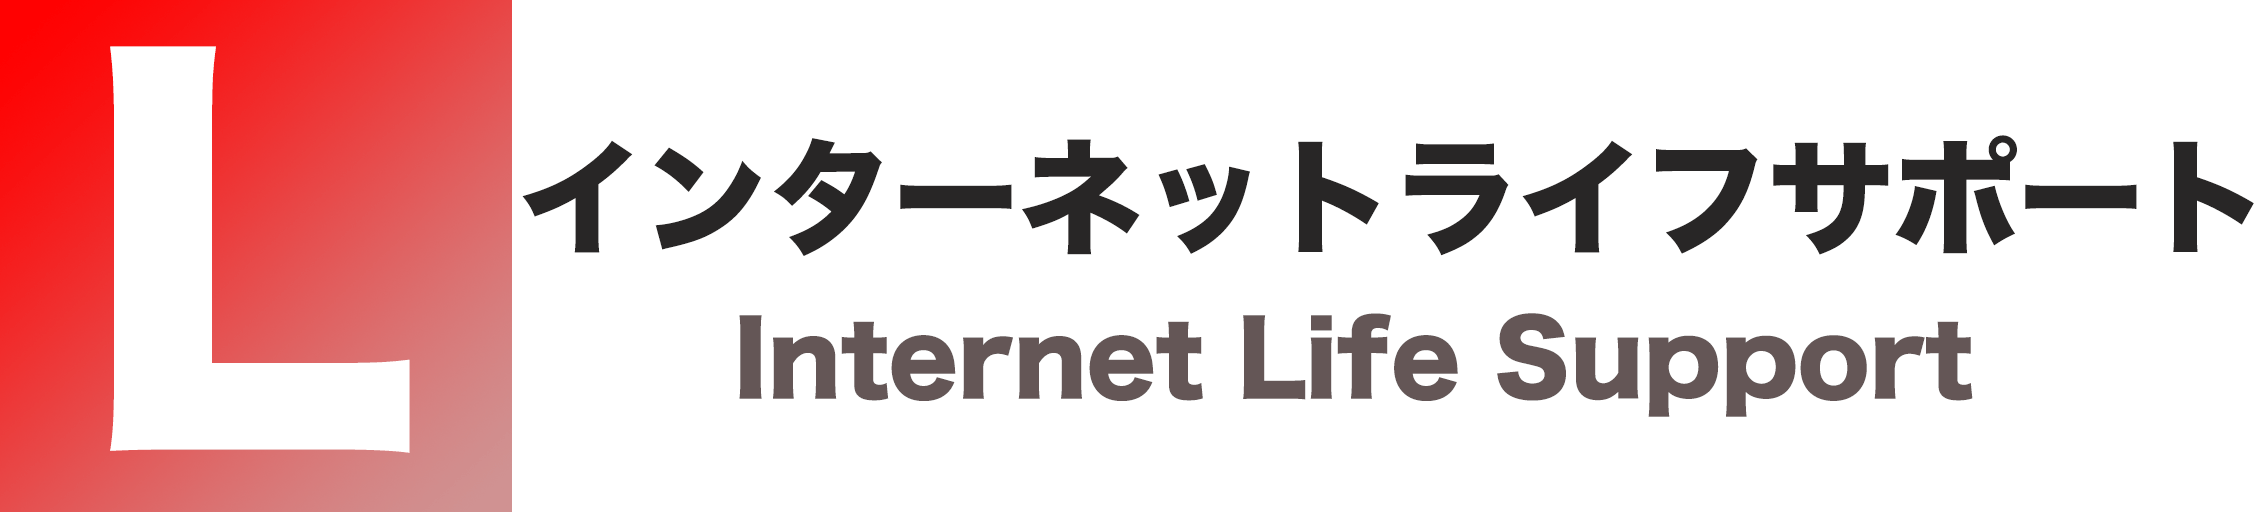 インターネットライフサポート/Internet Life Support